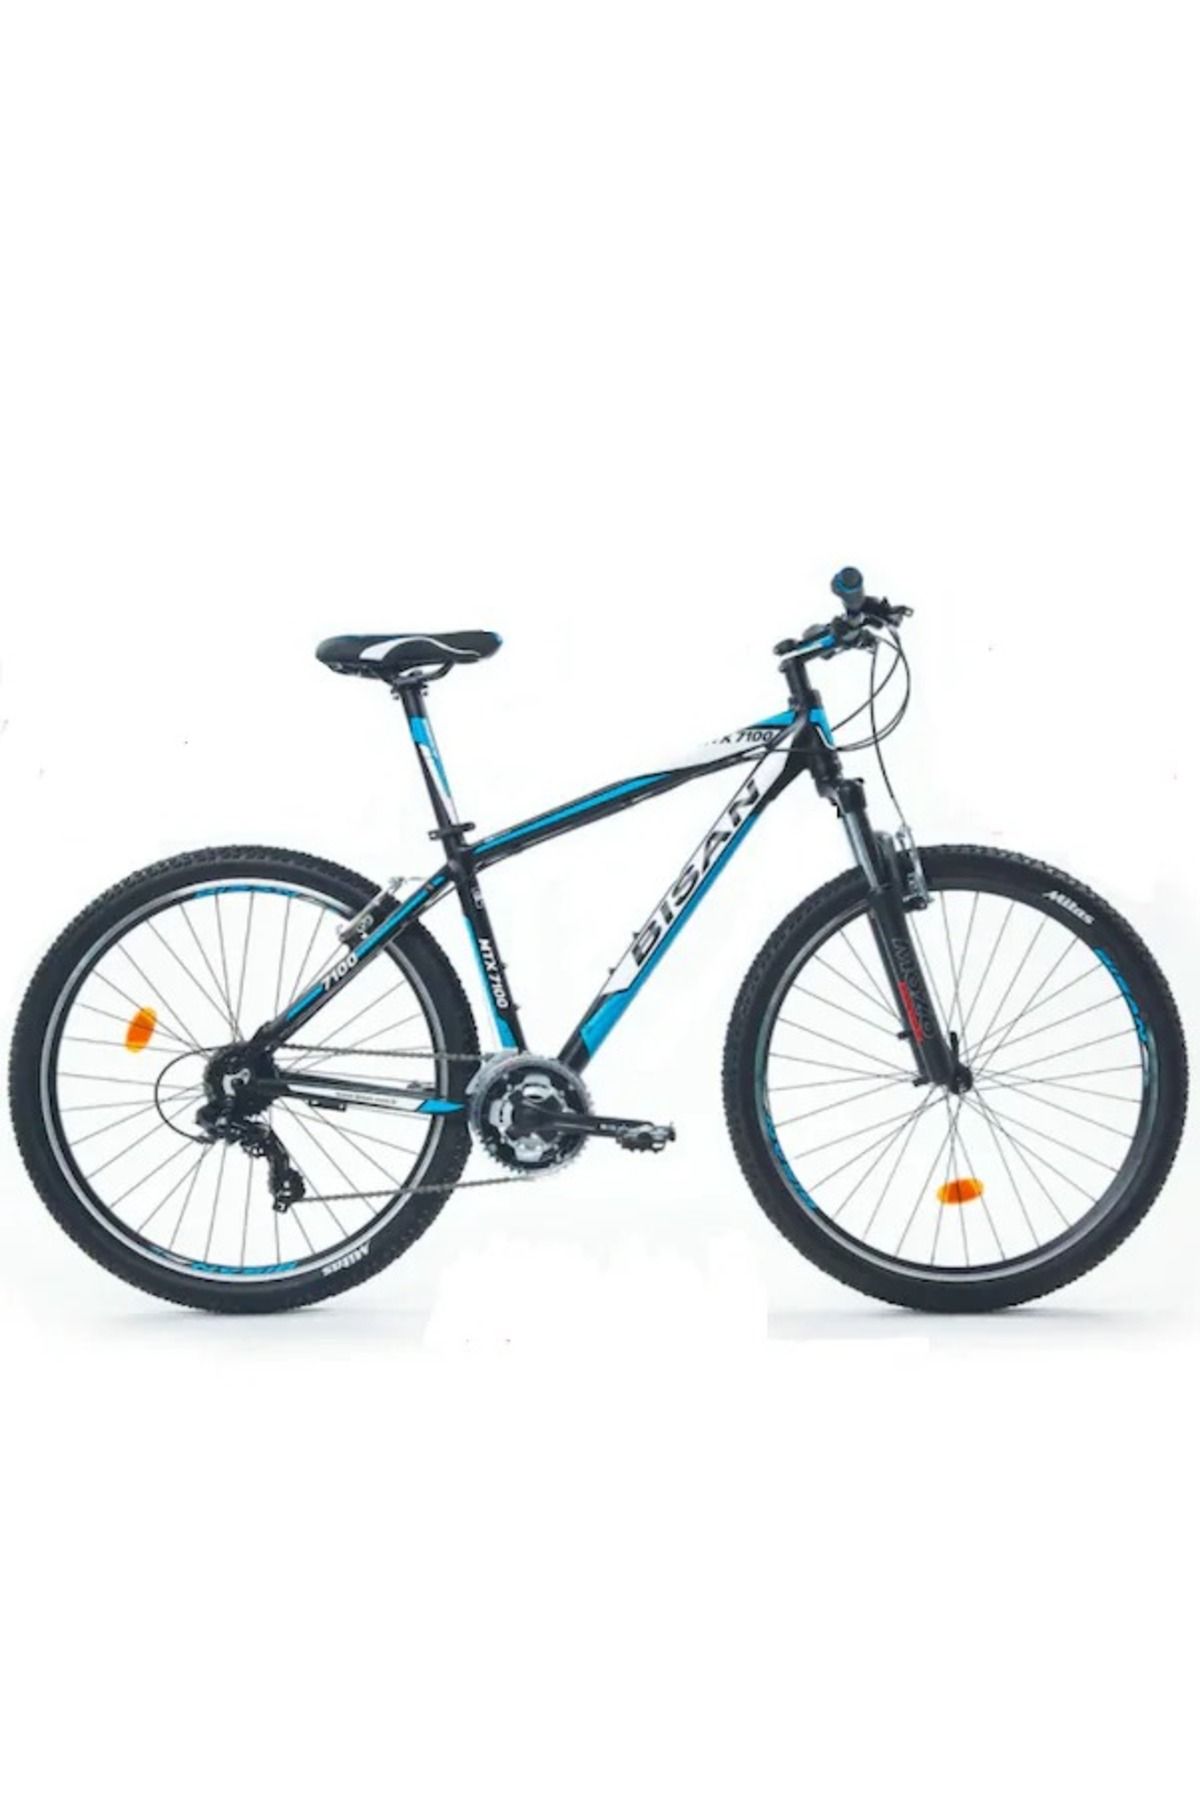 Bisan Mtx 7100 - 29 Jant Dağ Bisikleti 17' 43cm (M) Kadro - Siyah Mavi